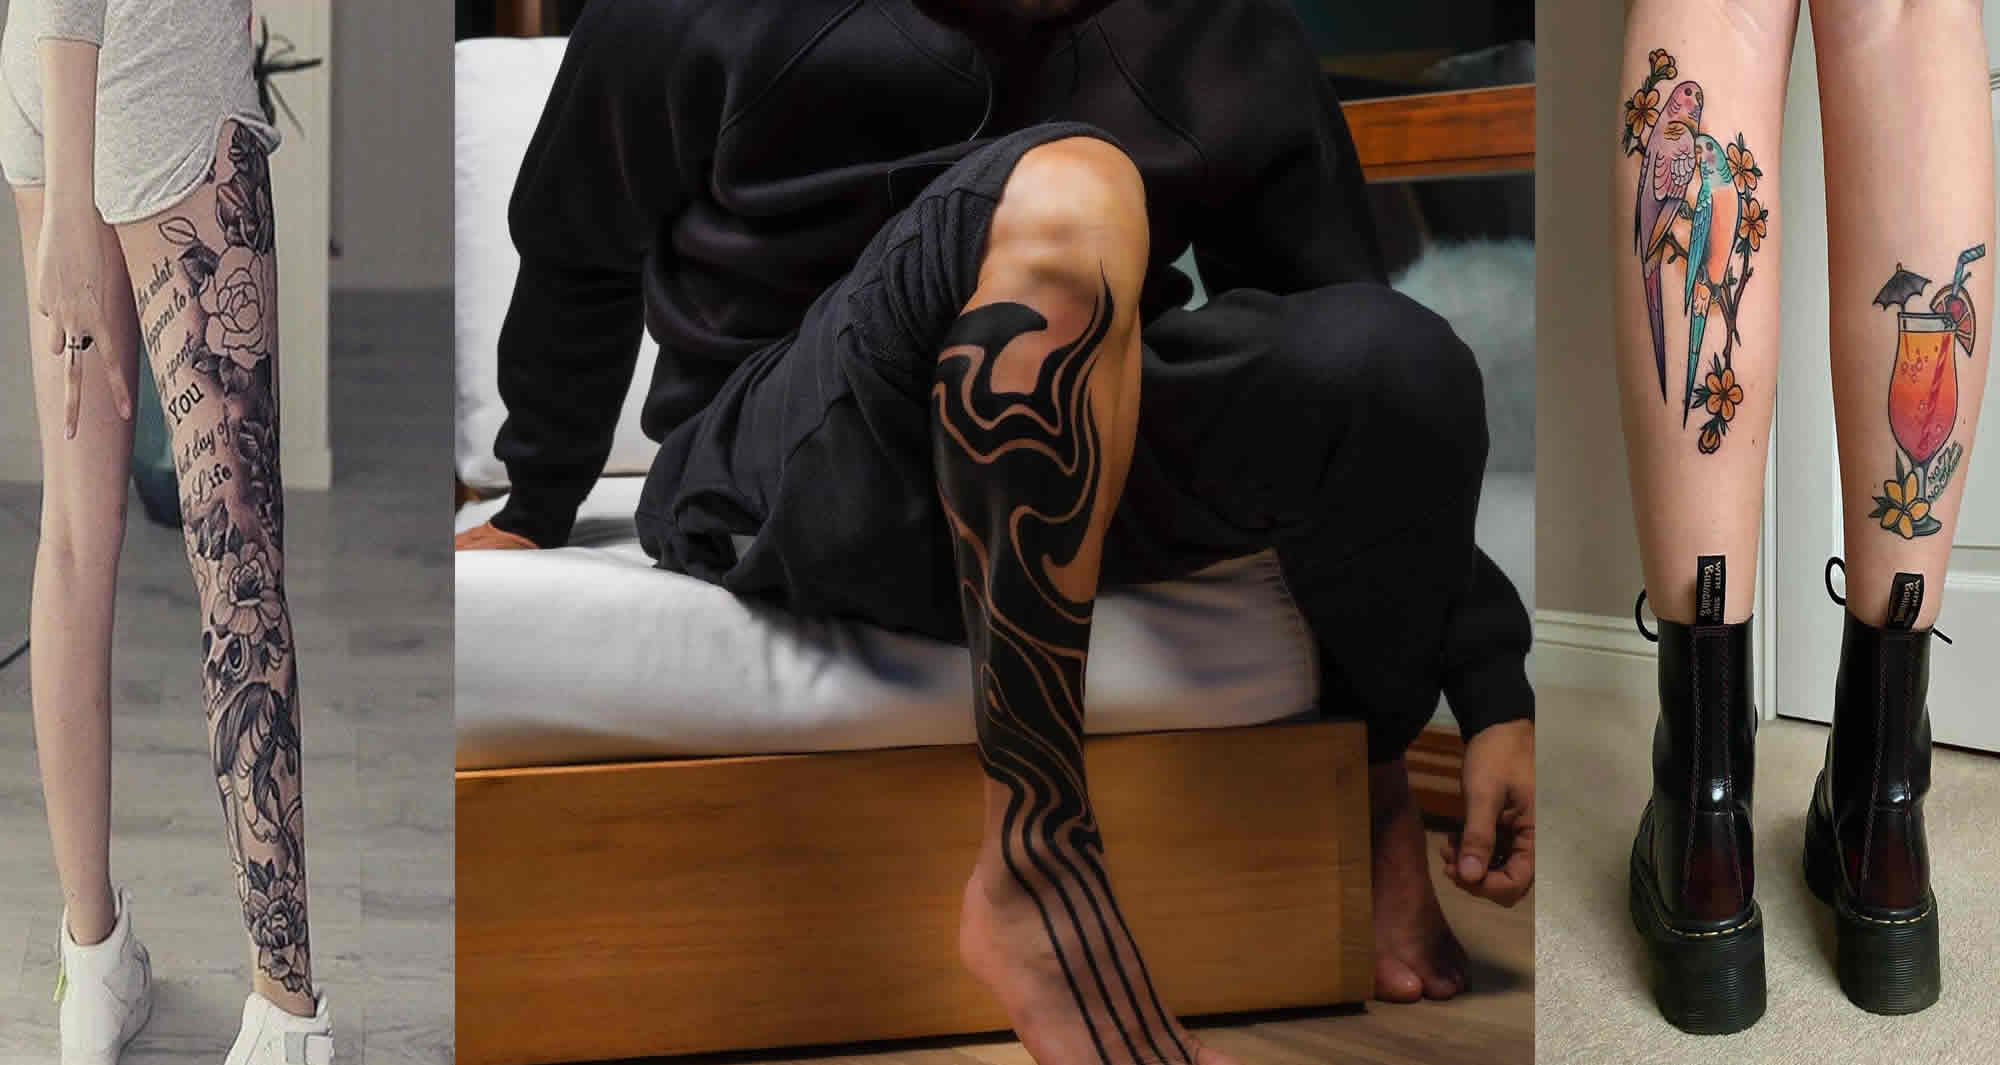 Cute Women's Leg Tattoo Ideas | Vivid Ink Tattoos